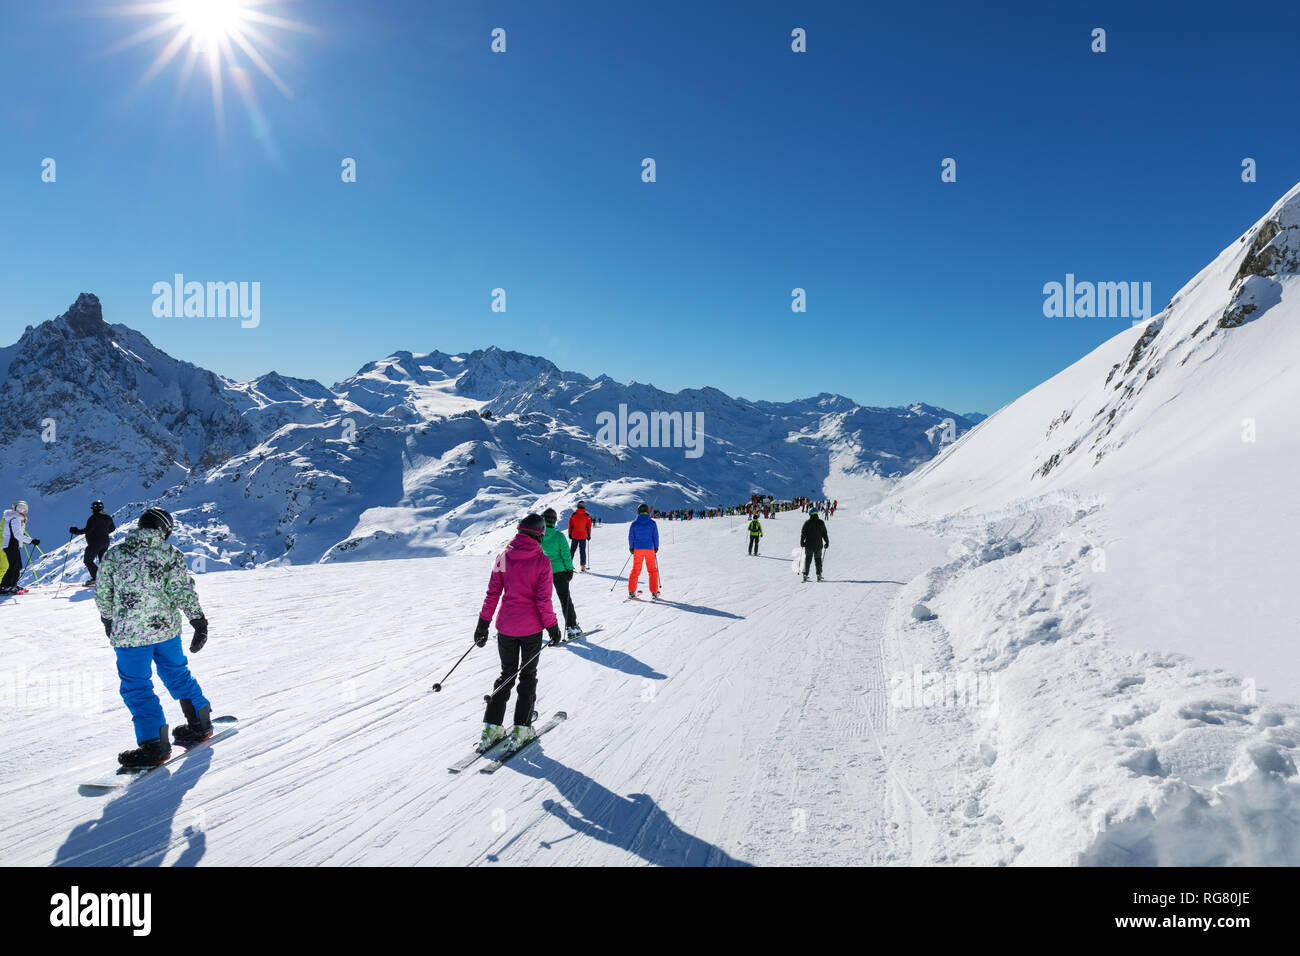 Les gens sur la pente ensoleillée à la station de ski des 3 vallées dans les Alpes, France Banque D'Images